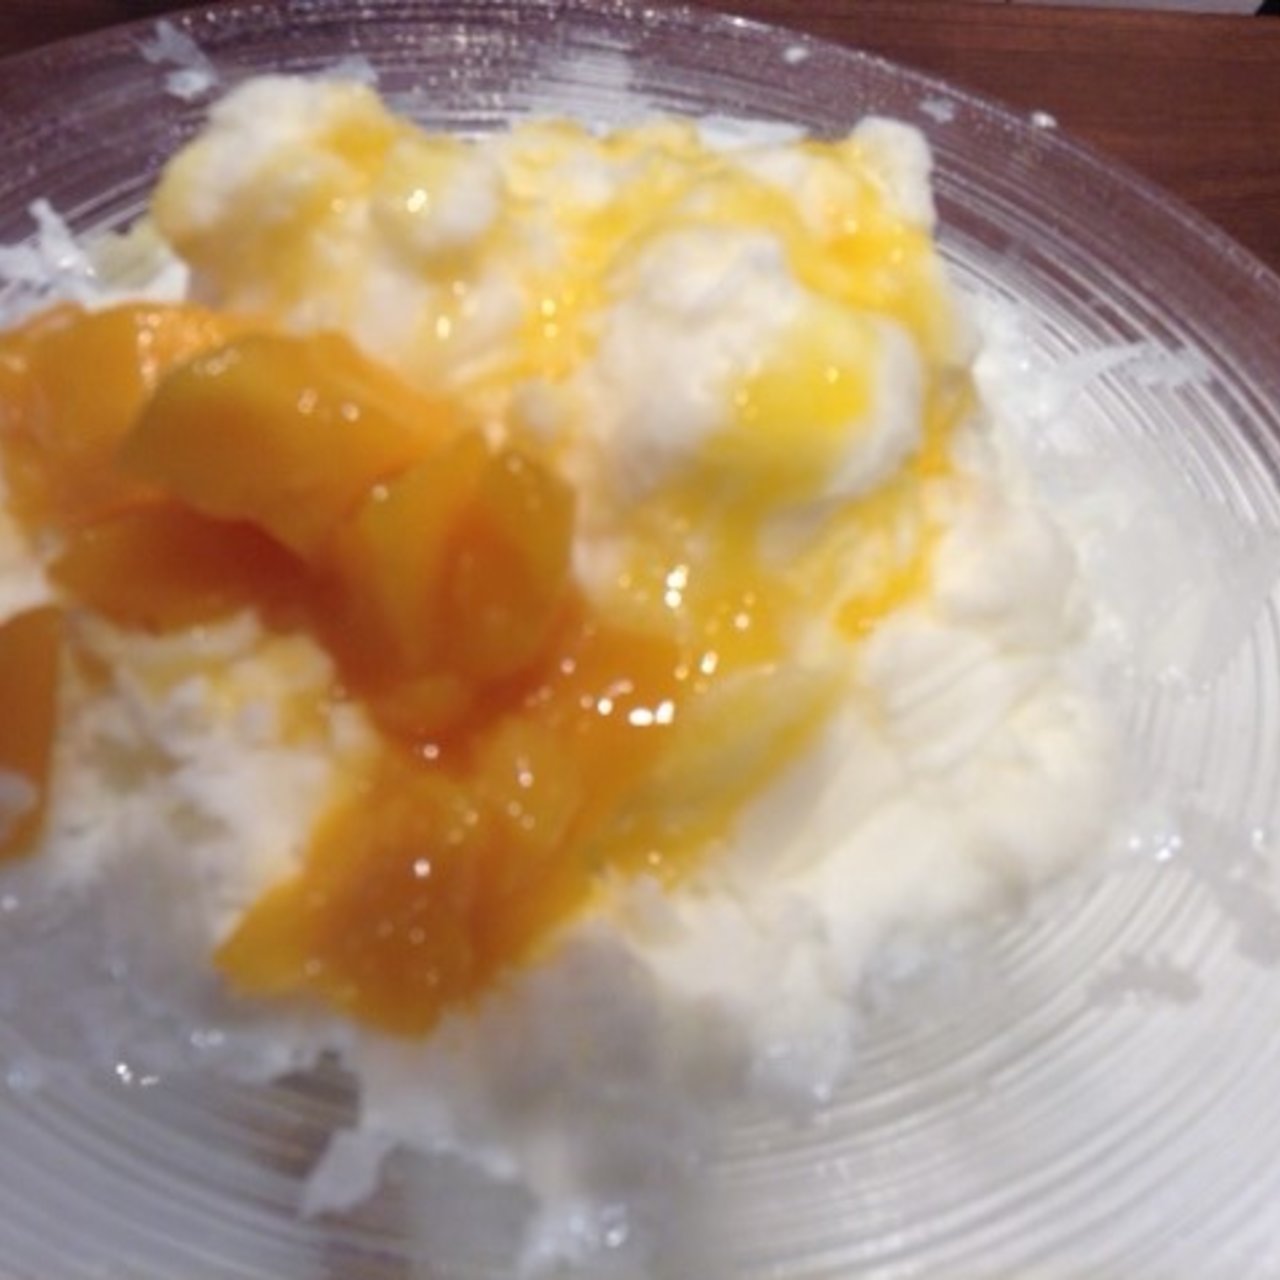 マンゴーのミルクかき氷(糖朝 日本橋店)の口コミ一覧 | おいしい一皿が集まるグルメコミュニティサービス「SARAH」